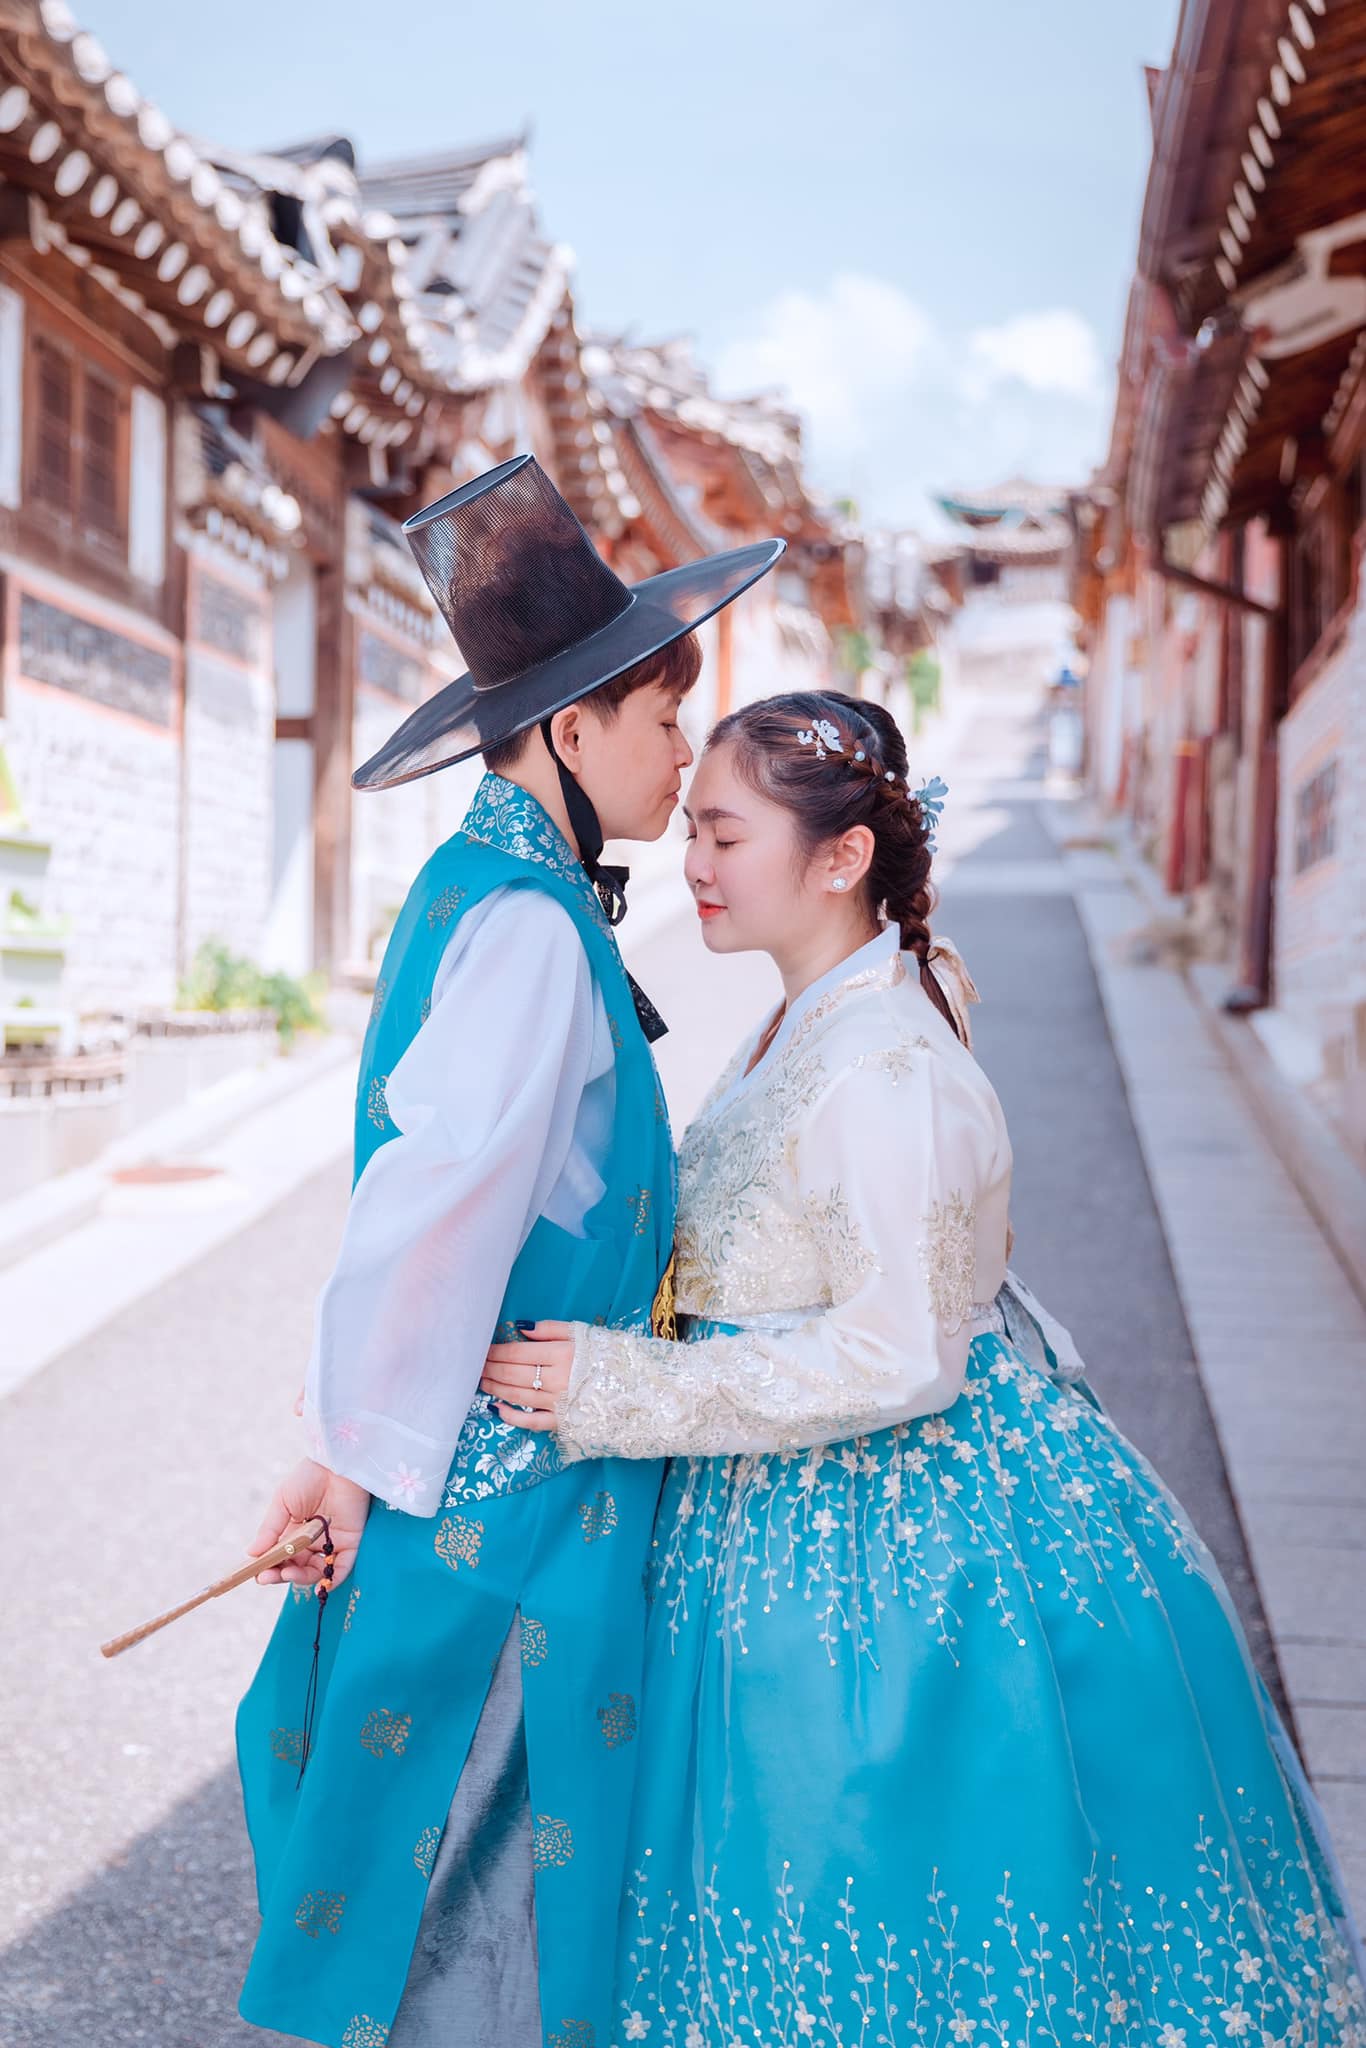 Bộ ảnh ngọt ngào tình tứ được Thiện Nhân và N.T thực hiện trong chuyến du lịch Hàn Quốc vào đầu tháng 8